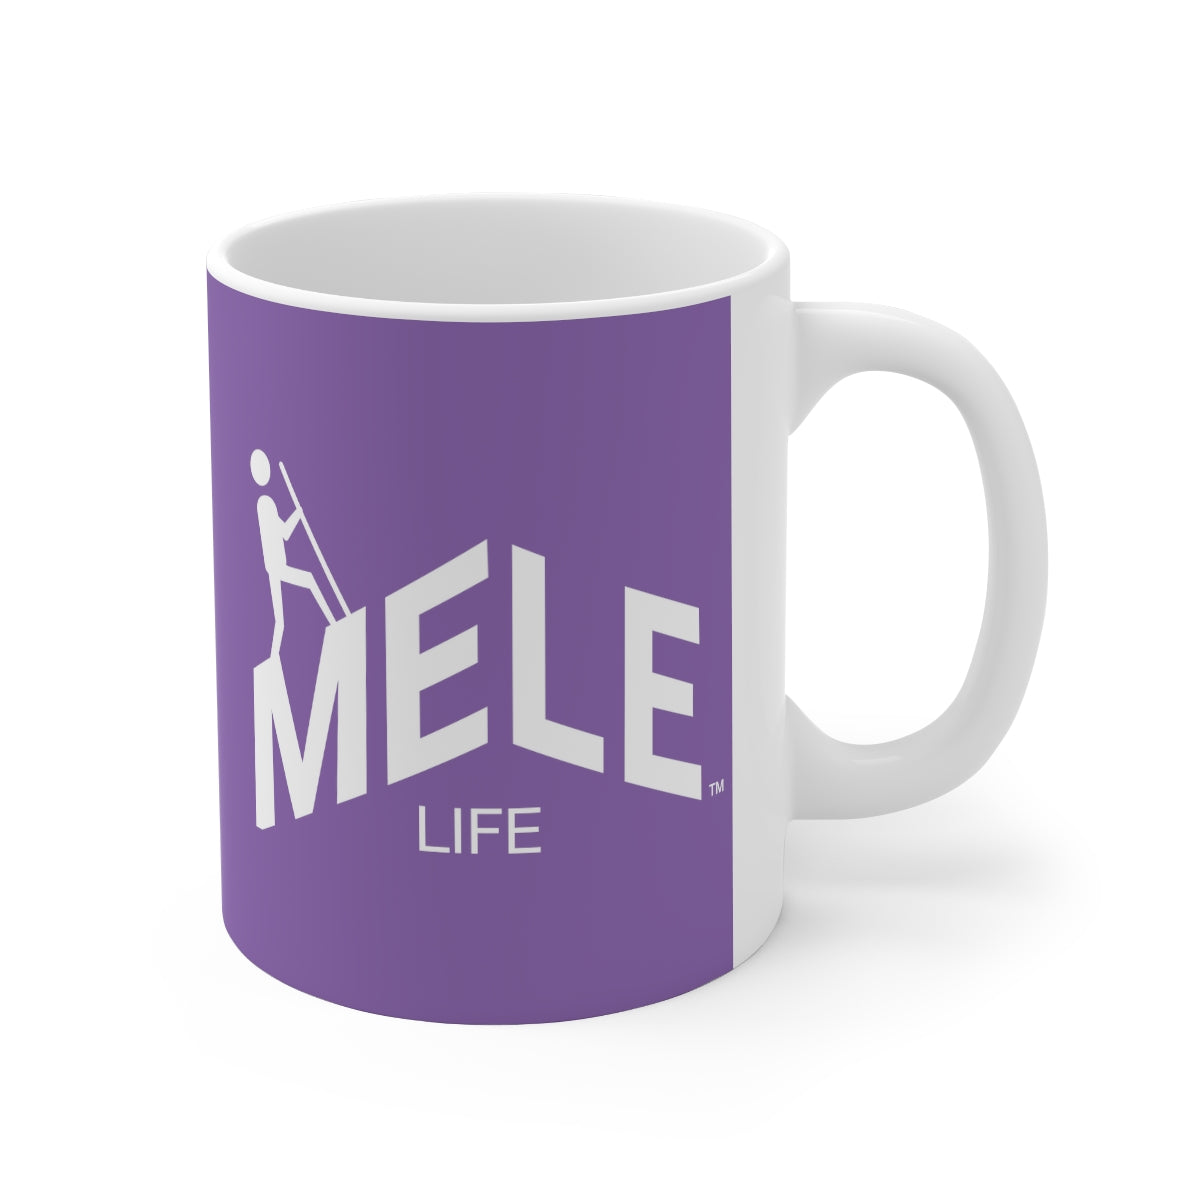 Coffee Mug - MELE LIFE   (purple)